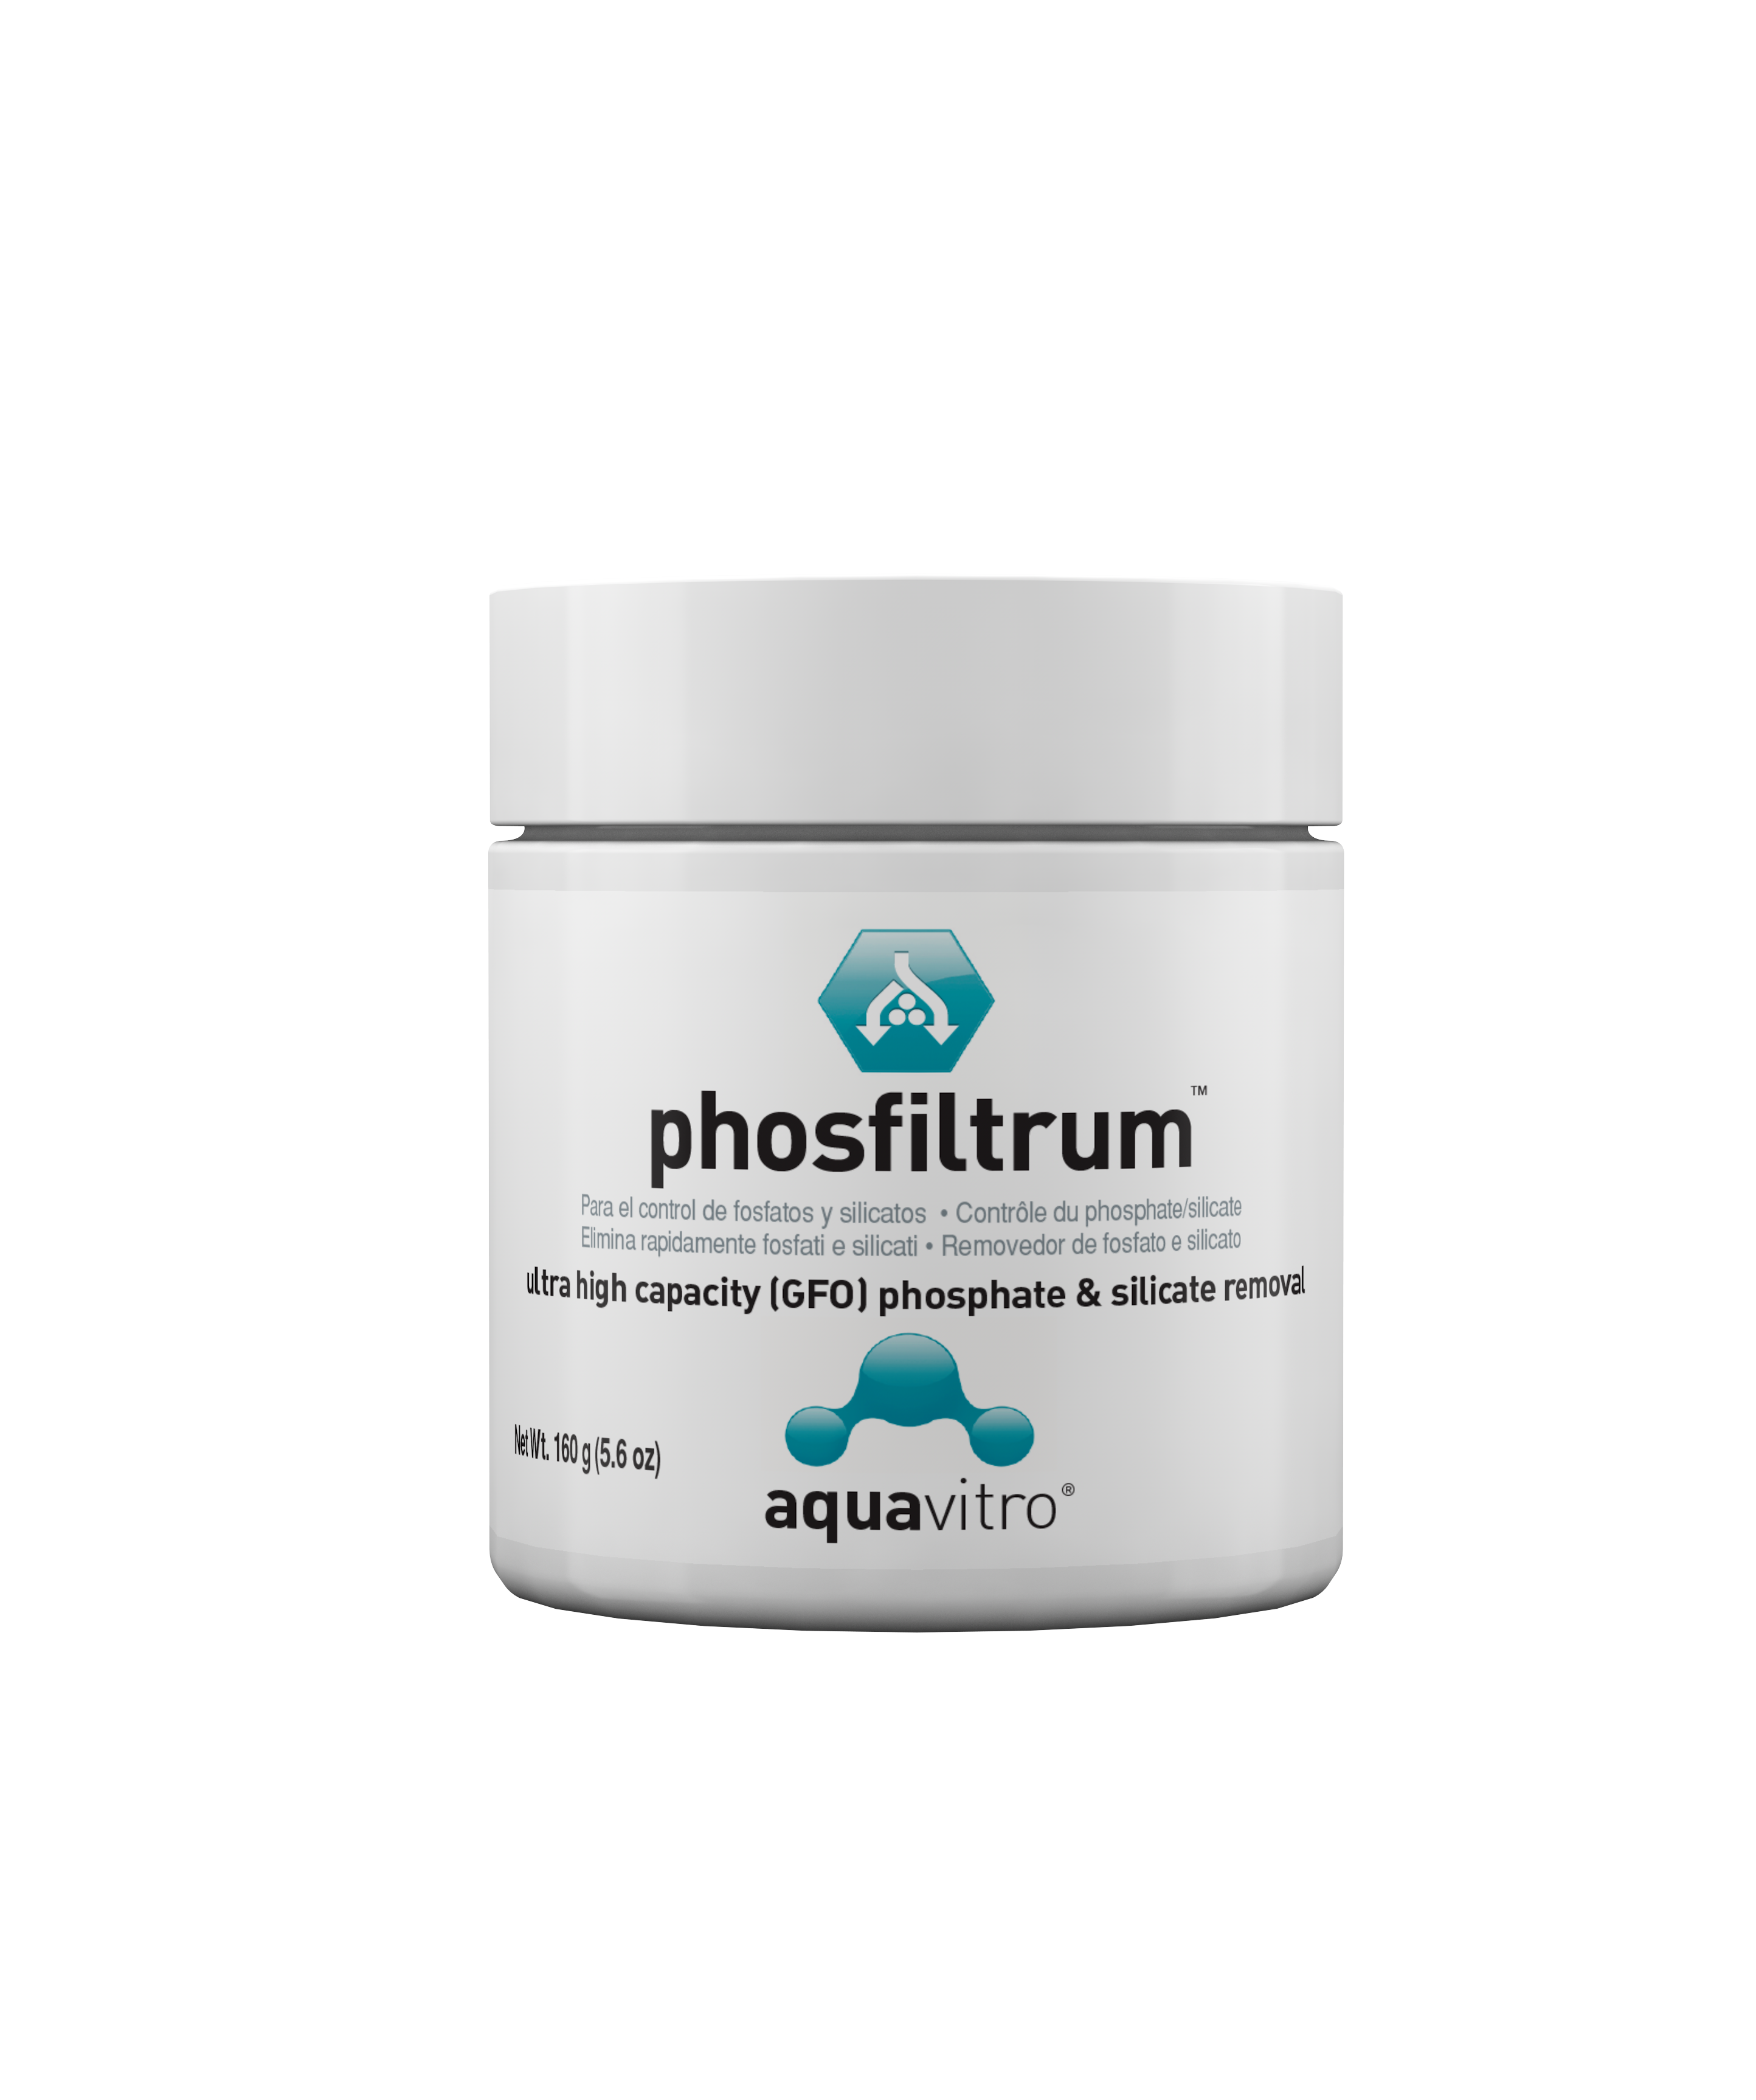 Aquavitro Phosfiltrum – najsilniejszy absorbent fosforanów i krzemianów